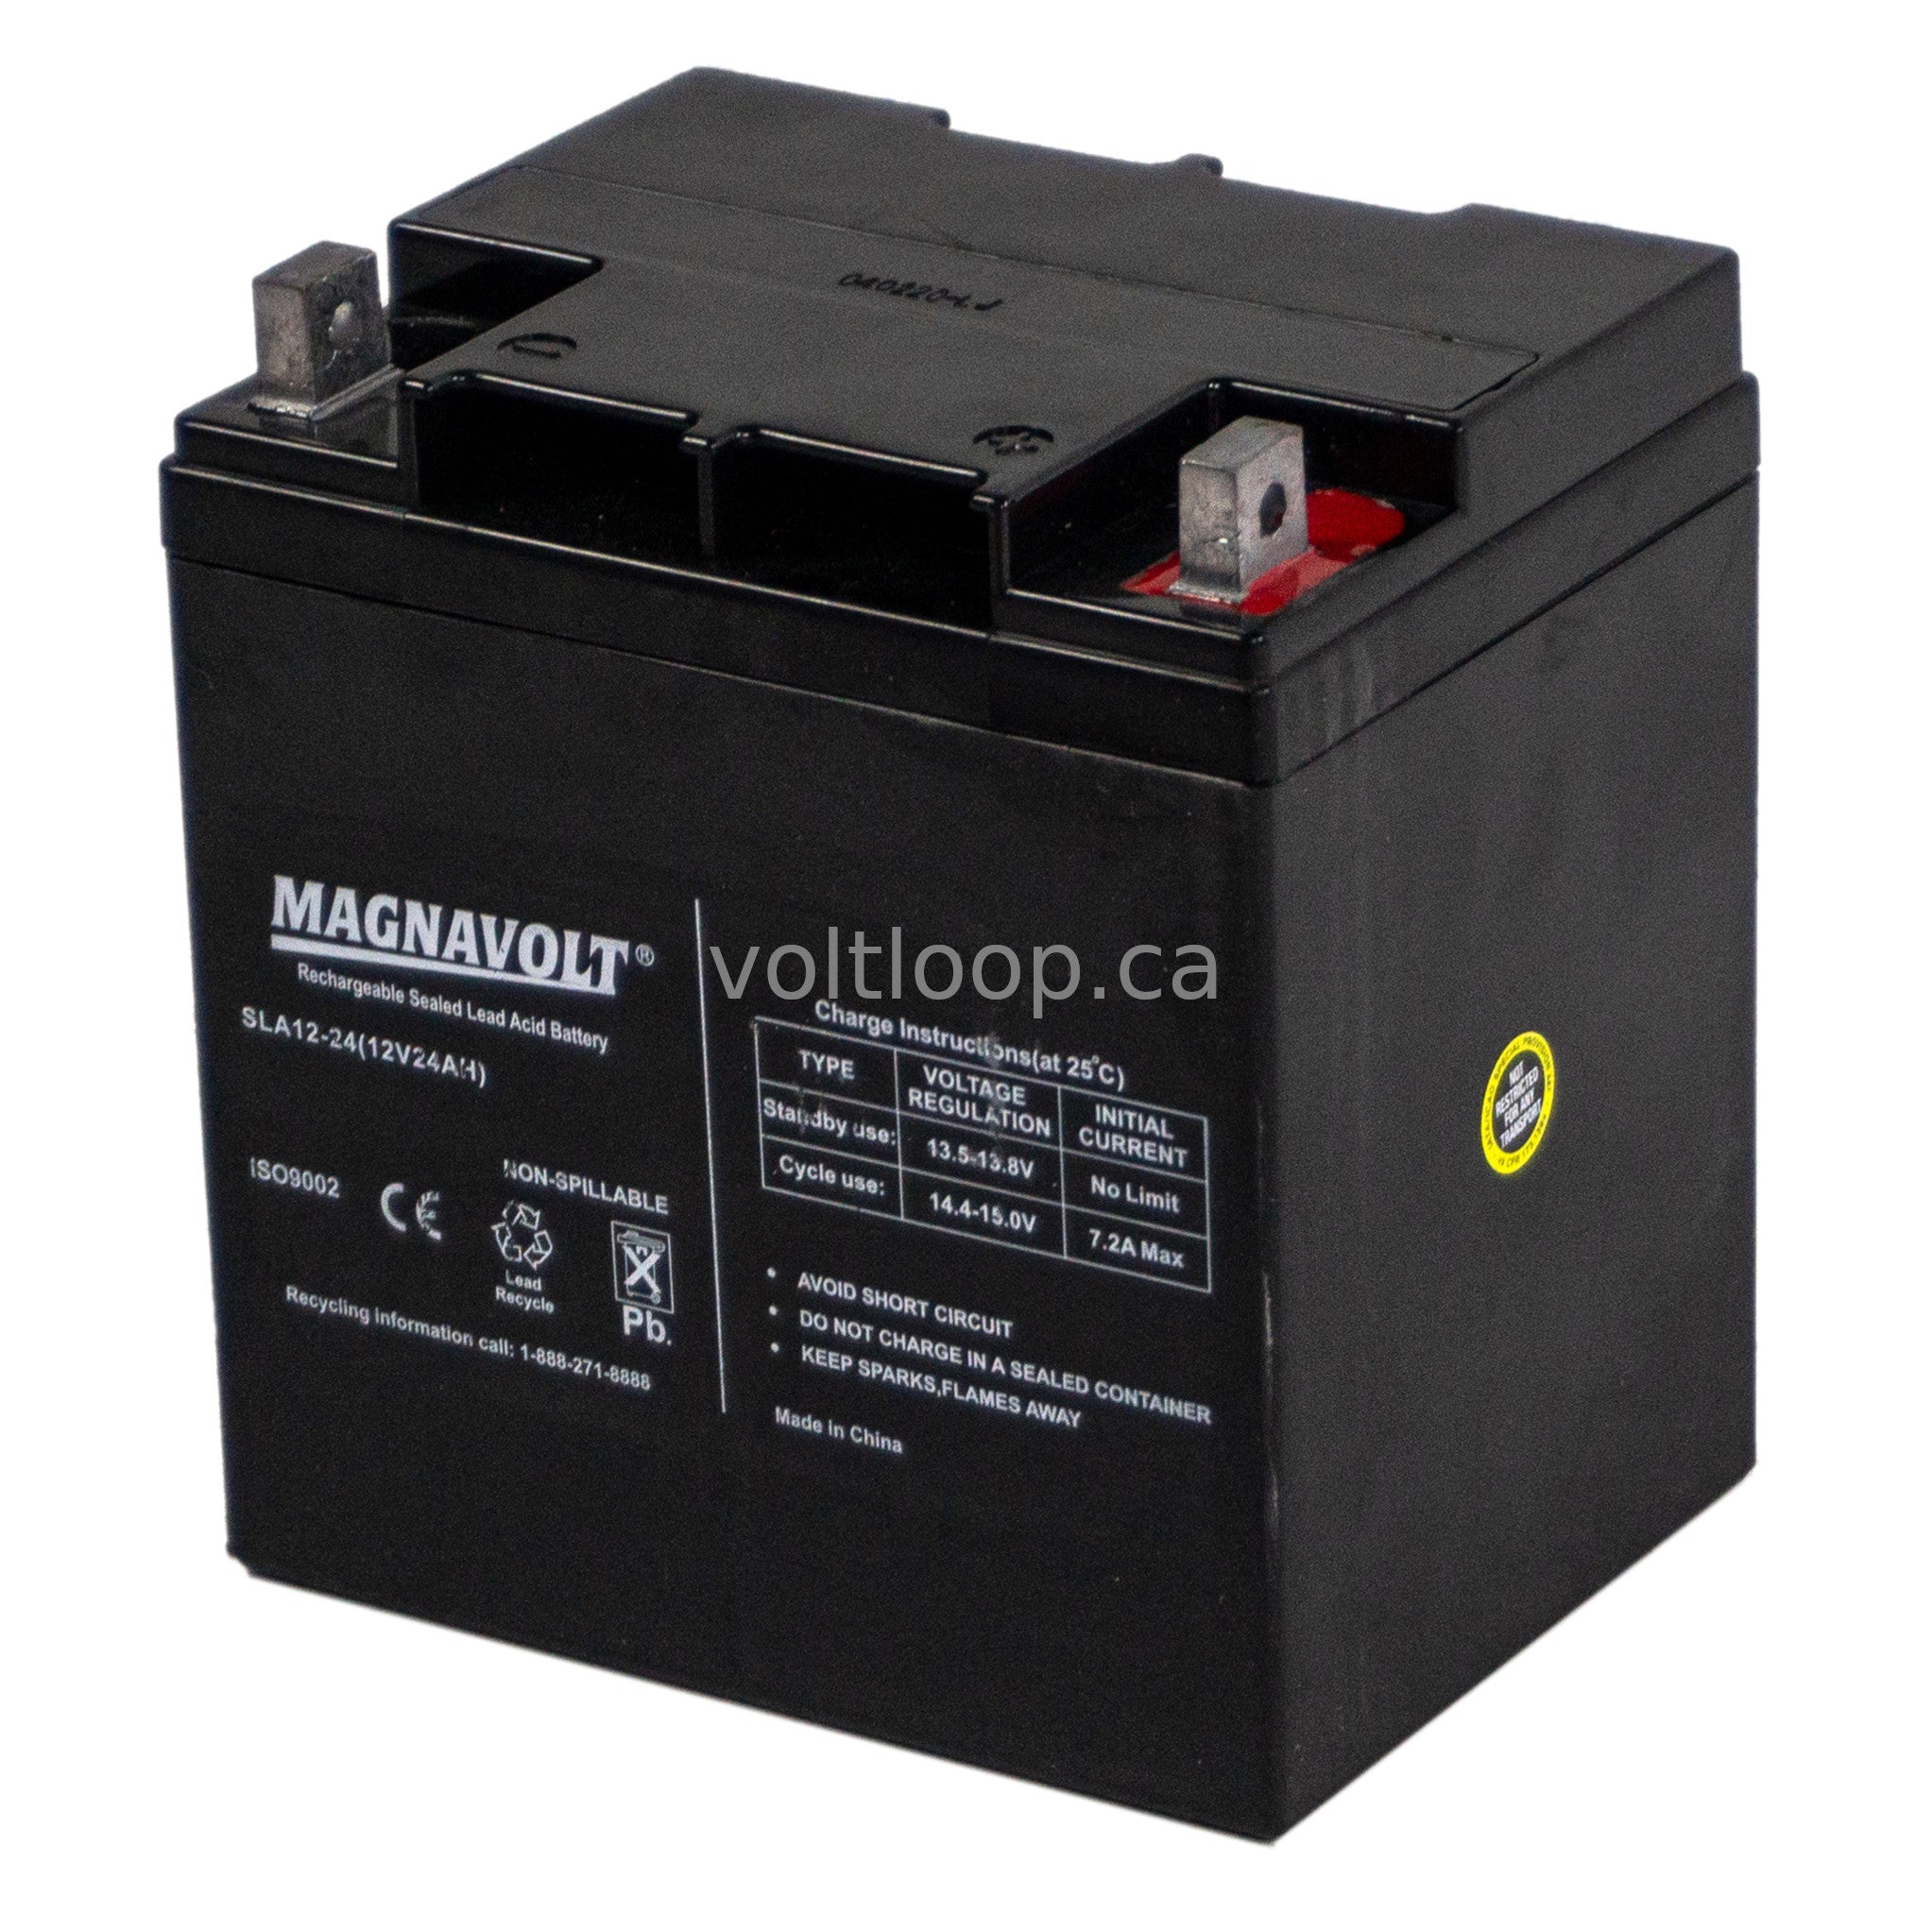 Magnavolt SLA12-24 12V 24 Ah Sealed Lead Acid Battery